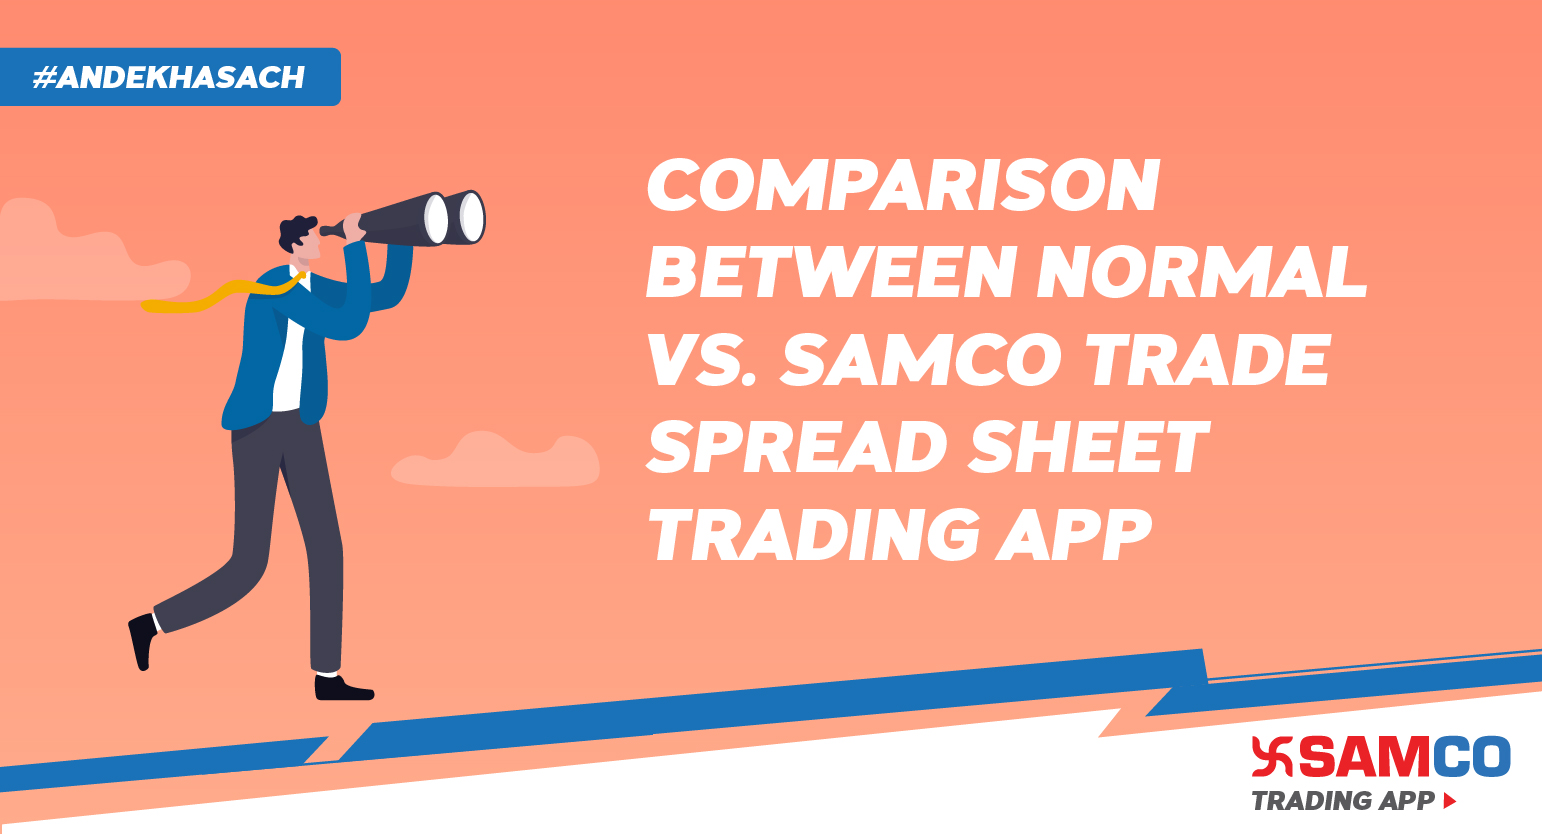 Normal Trade Book vs. Samco Trade Spreadsheet